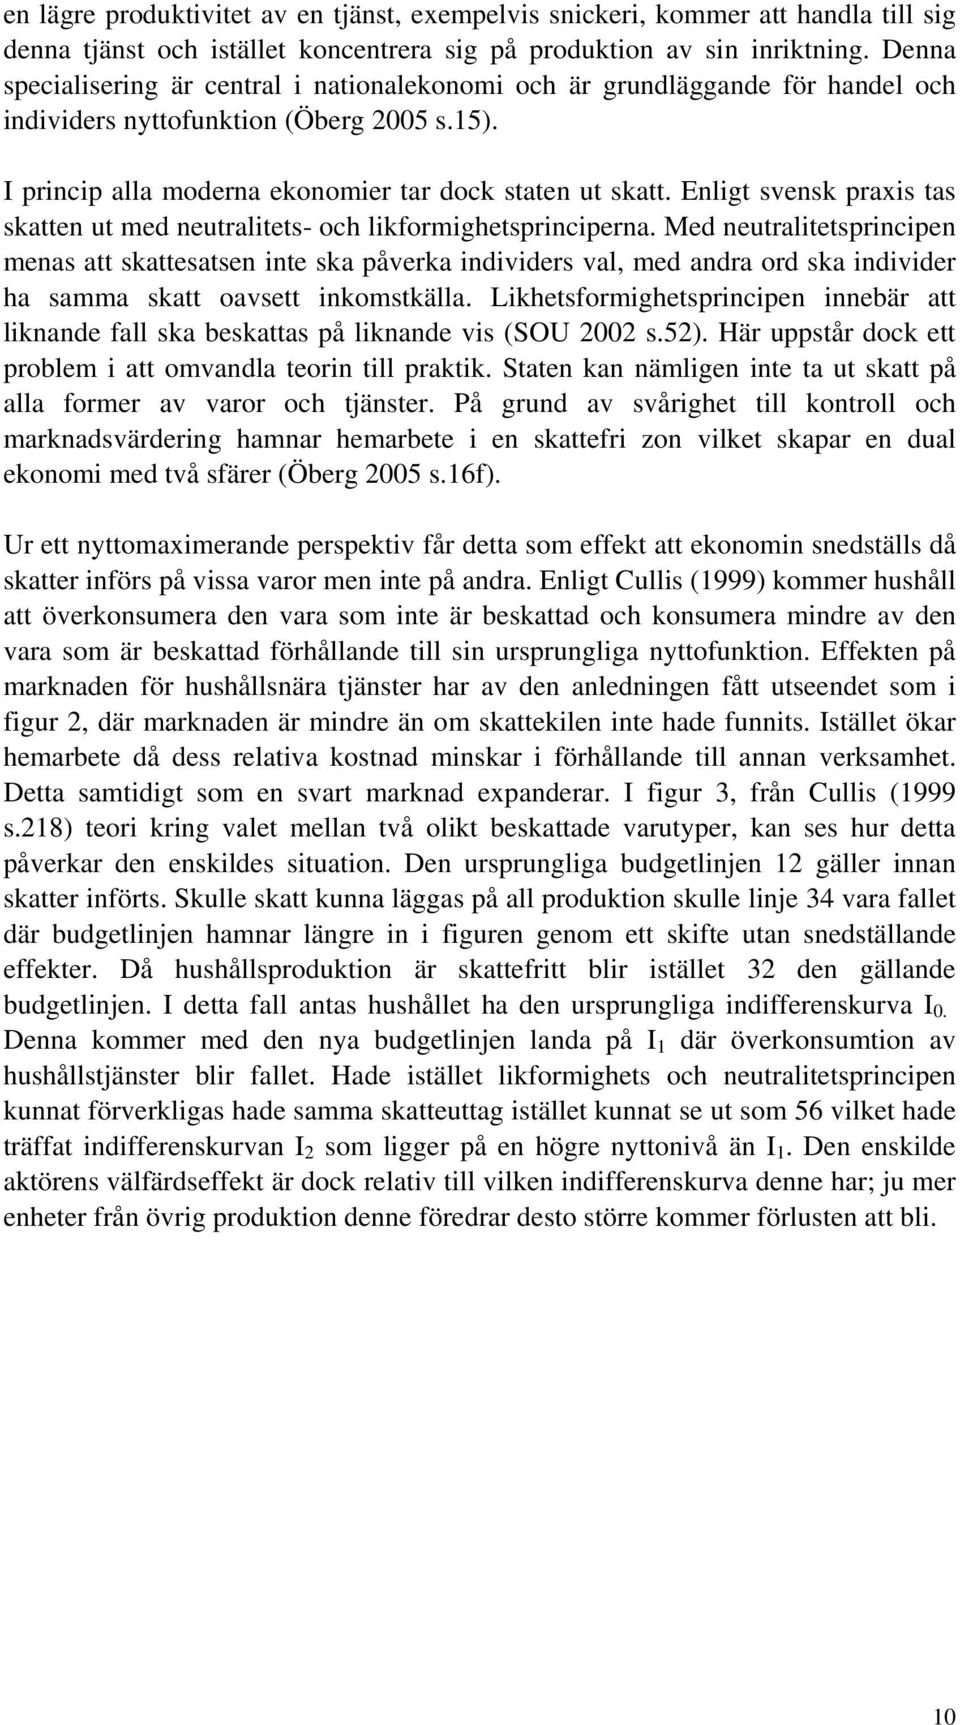 Enligt svensk praxis tas skatten ut med neutralitets- och likformighetsprinciperna.